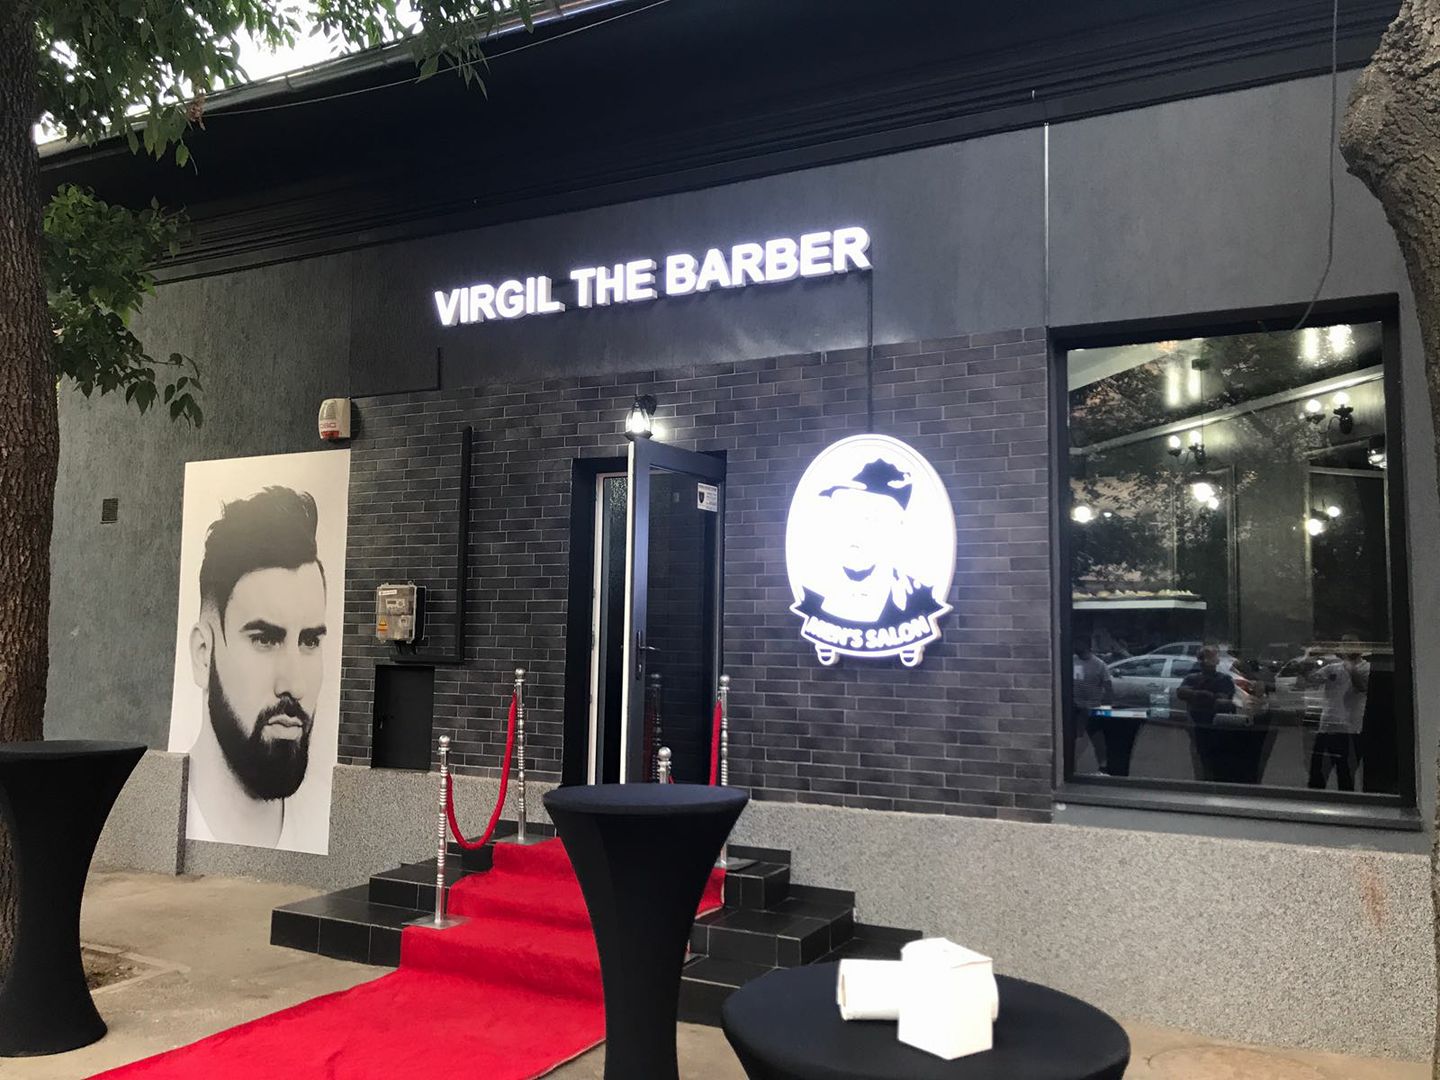 Workshop, Virgil the Barber